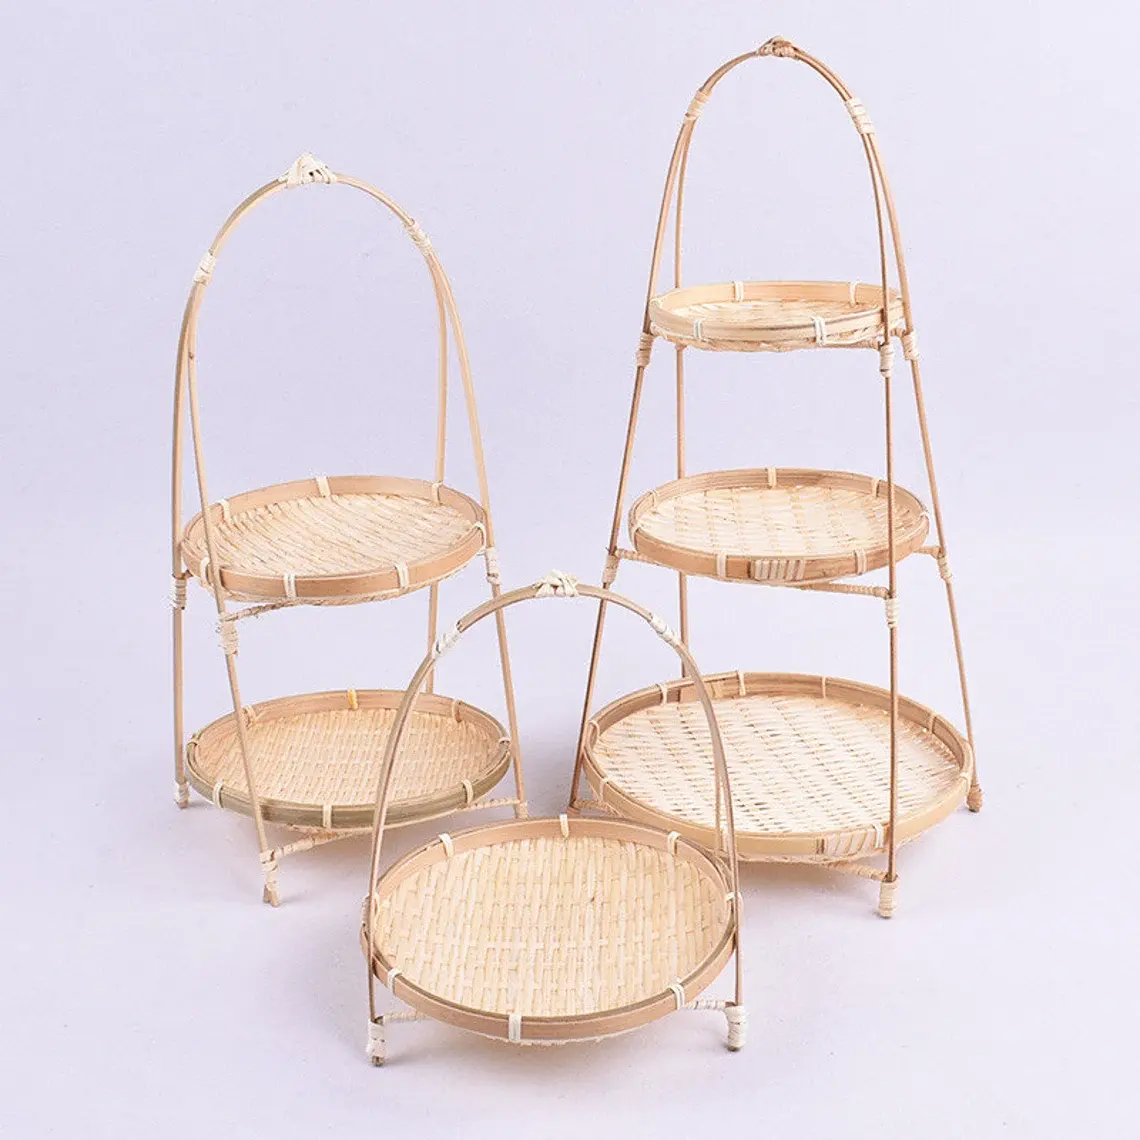 多層竹バスケット織りケーキトレイ手作り竹ラック結婚式の装飾のためのクリエイティブホルダーキッチンローリングトレイ